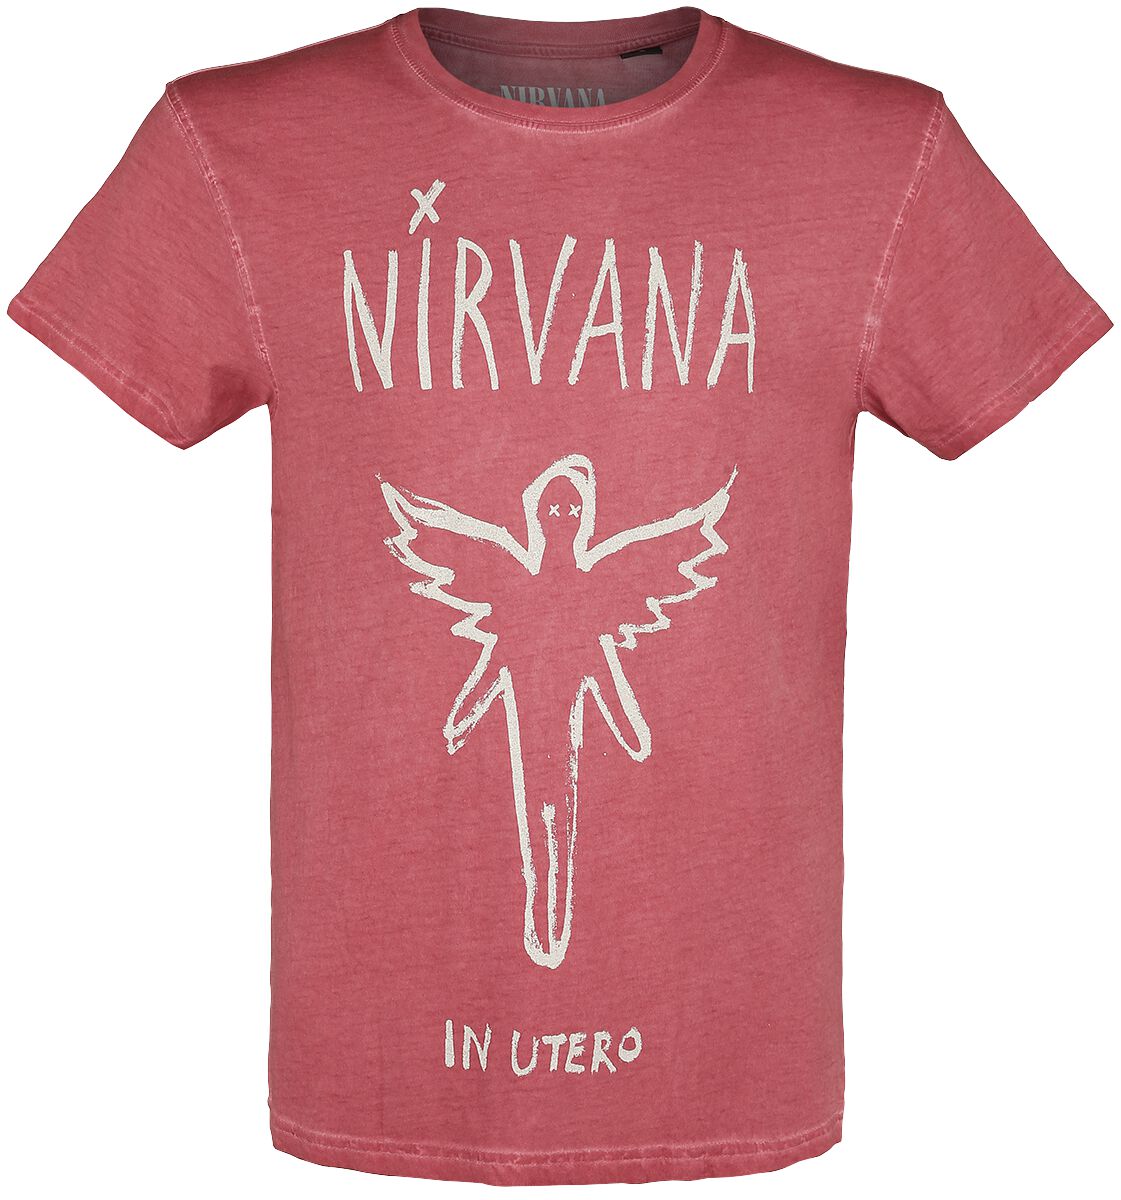 Nirvana T-Shirt - In Utero - S bis XXL - für Männer - Größe XXL - rot  - Lizenziertes Merchandise!